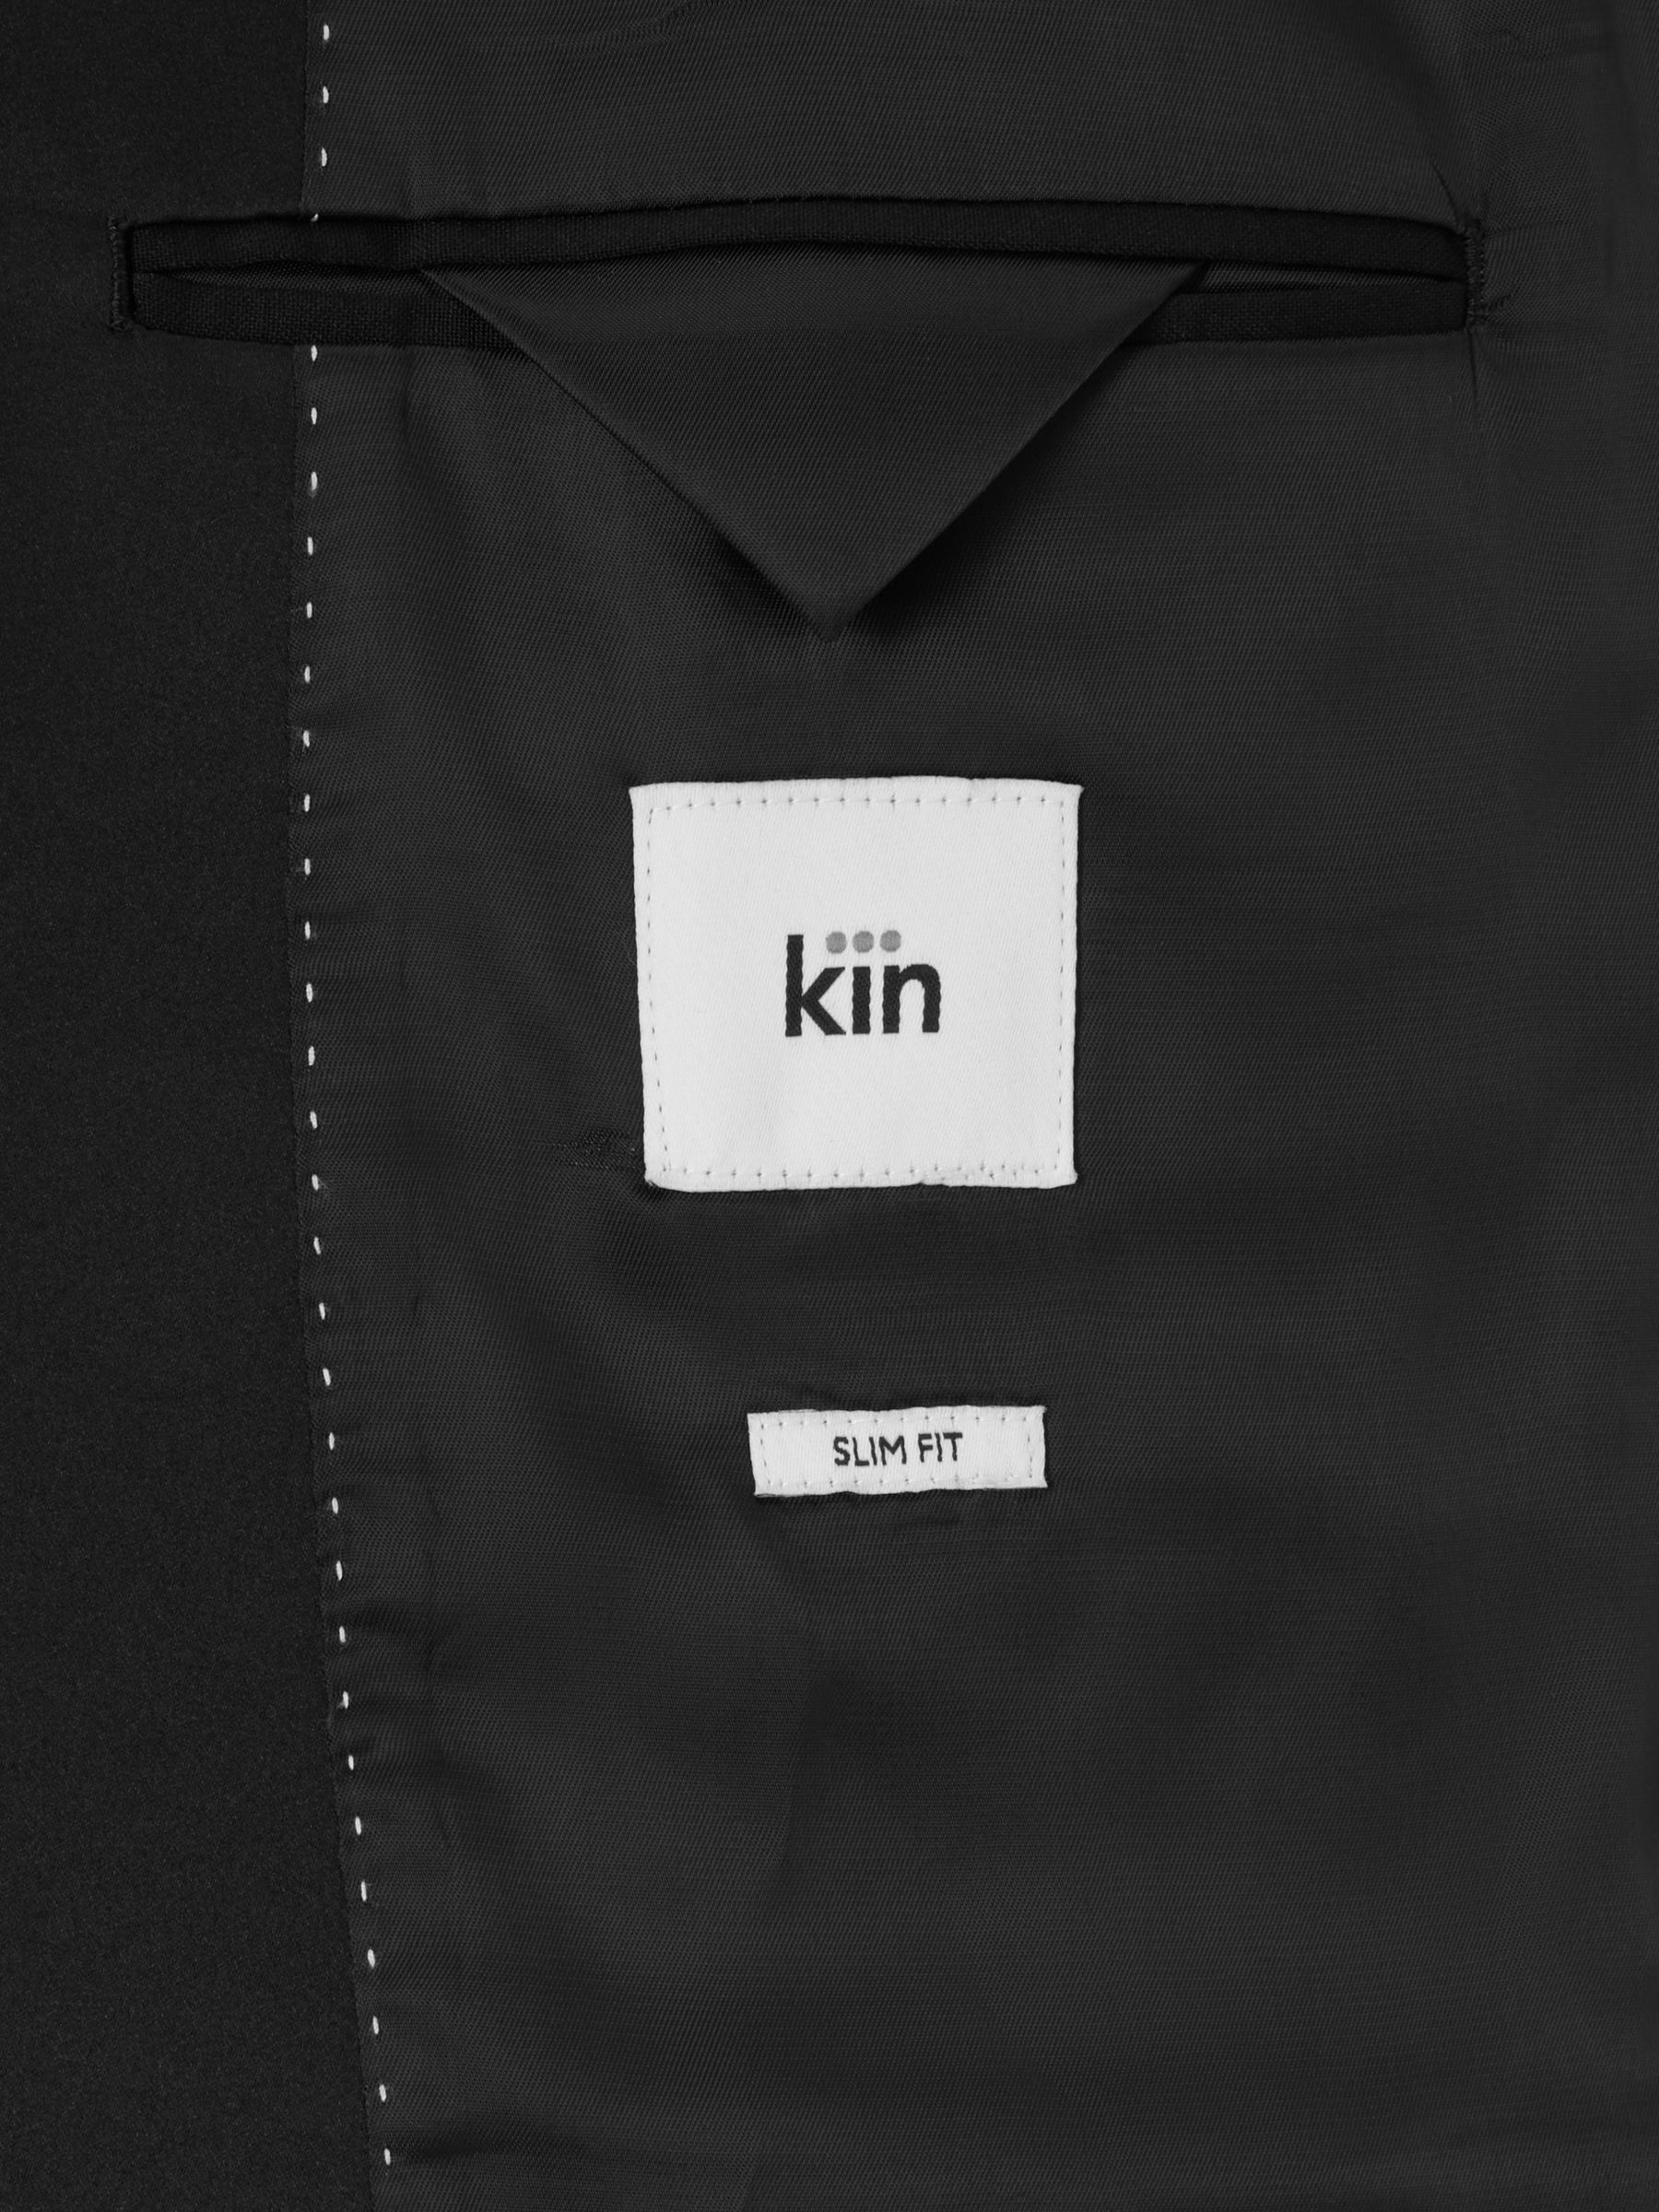 Kin Peak Slim Fit Dinner Jacket, Black, 36R